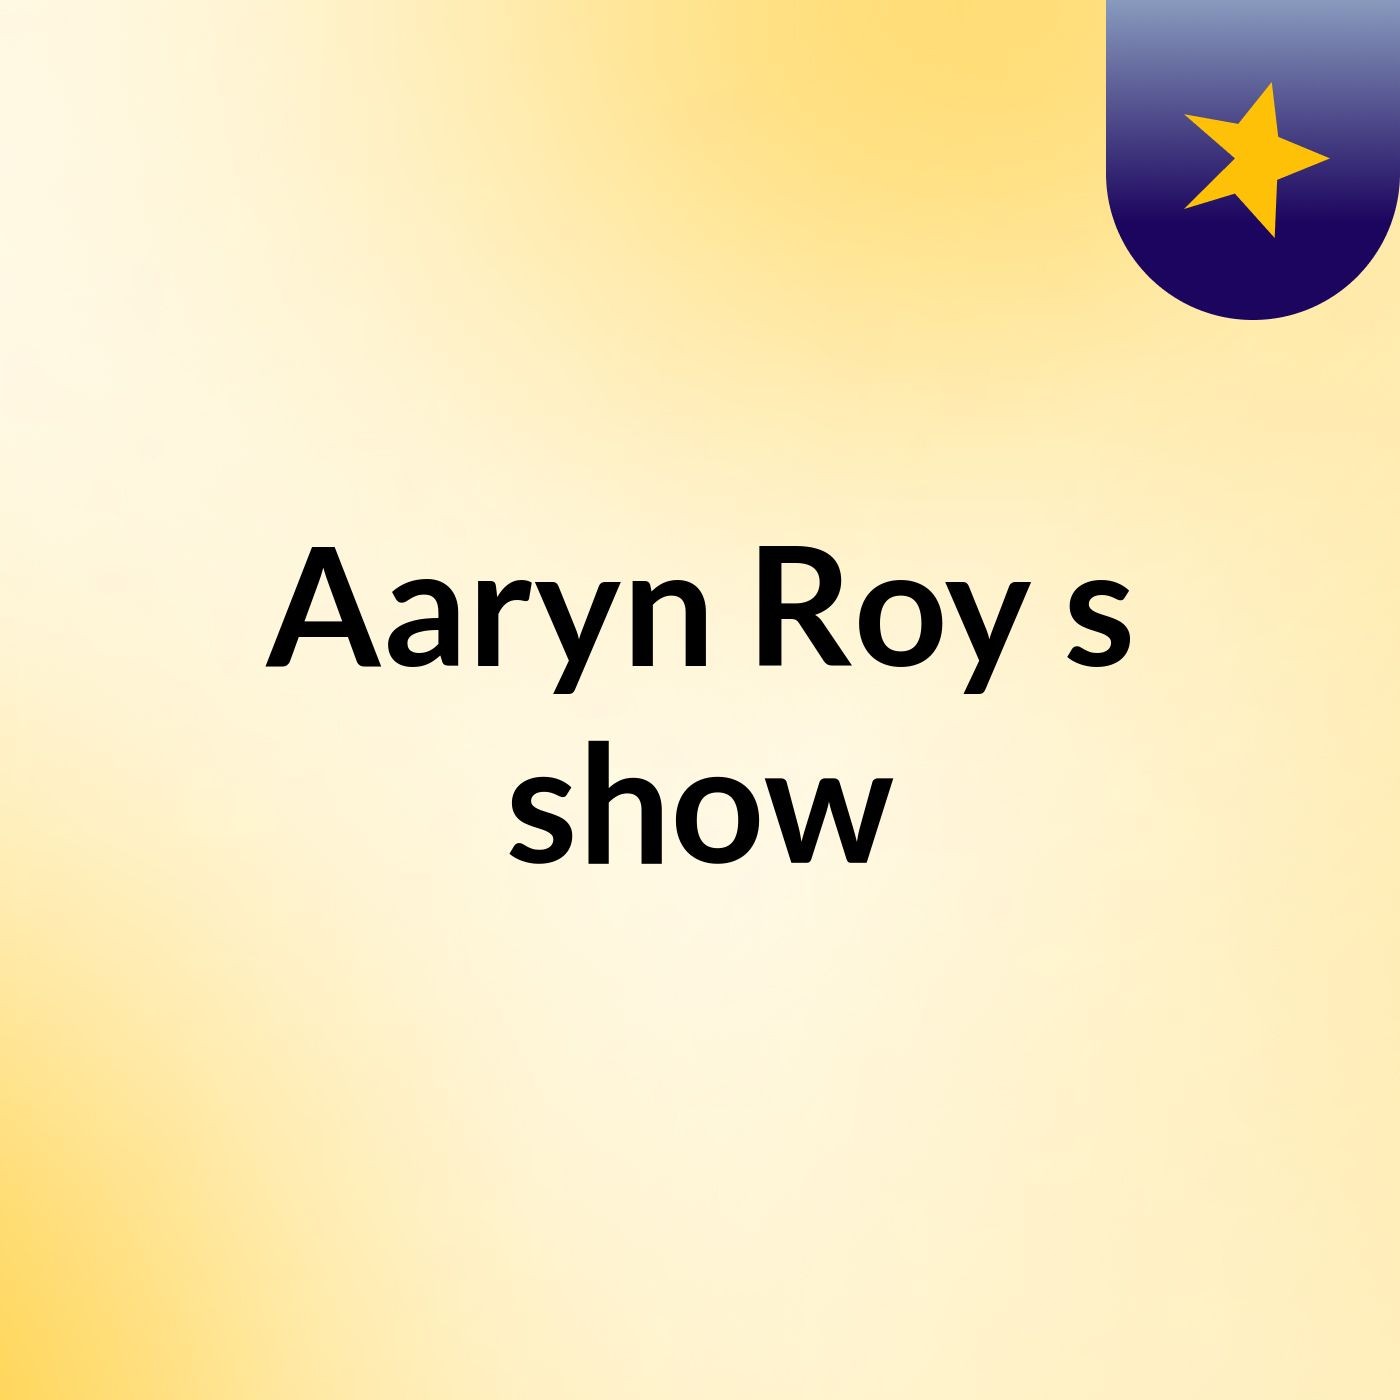 Aaryn Roy's show